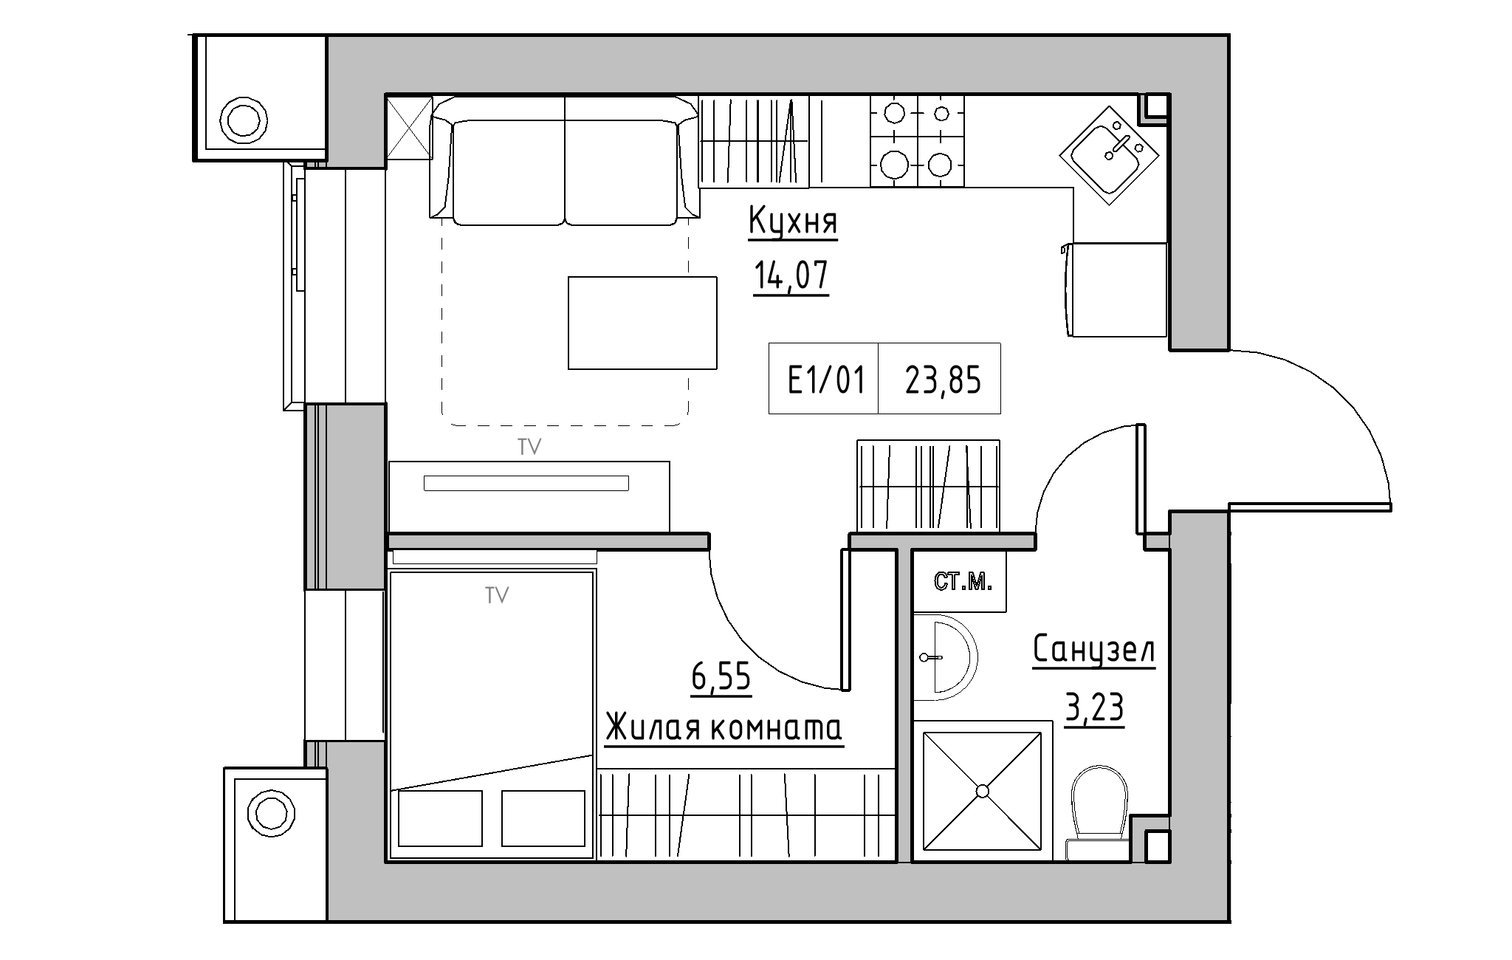 Планування 1-к квартира площею 23.85м2, KS-013-02/0003.